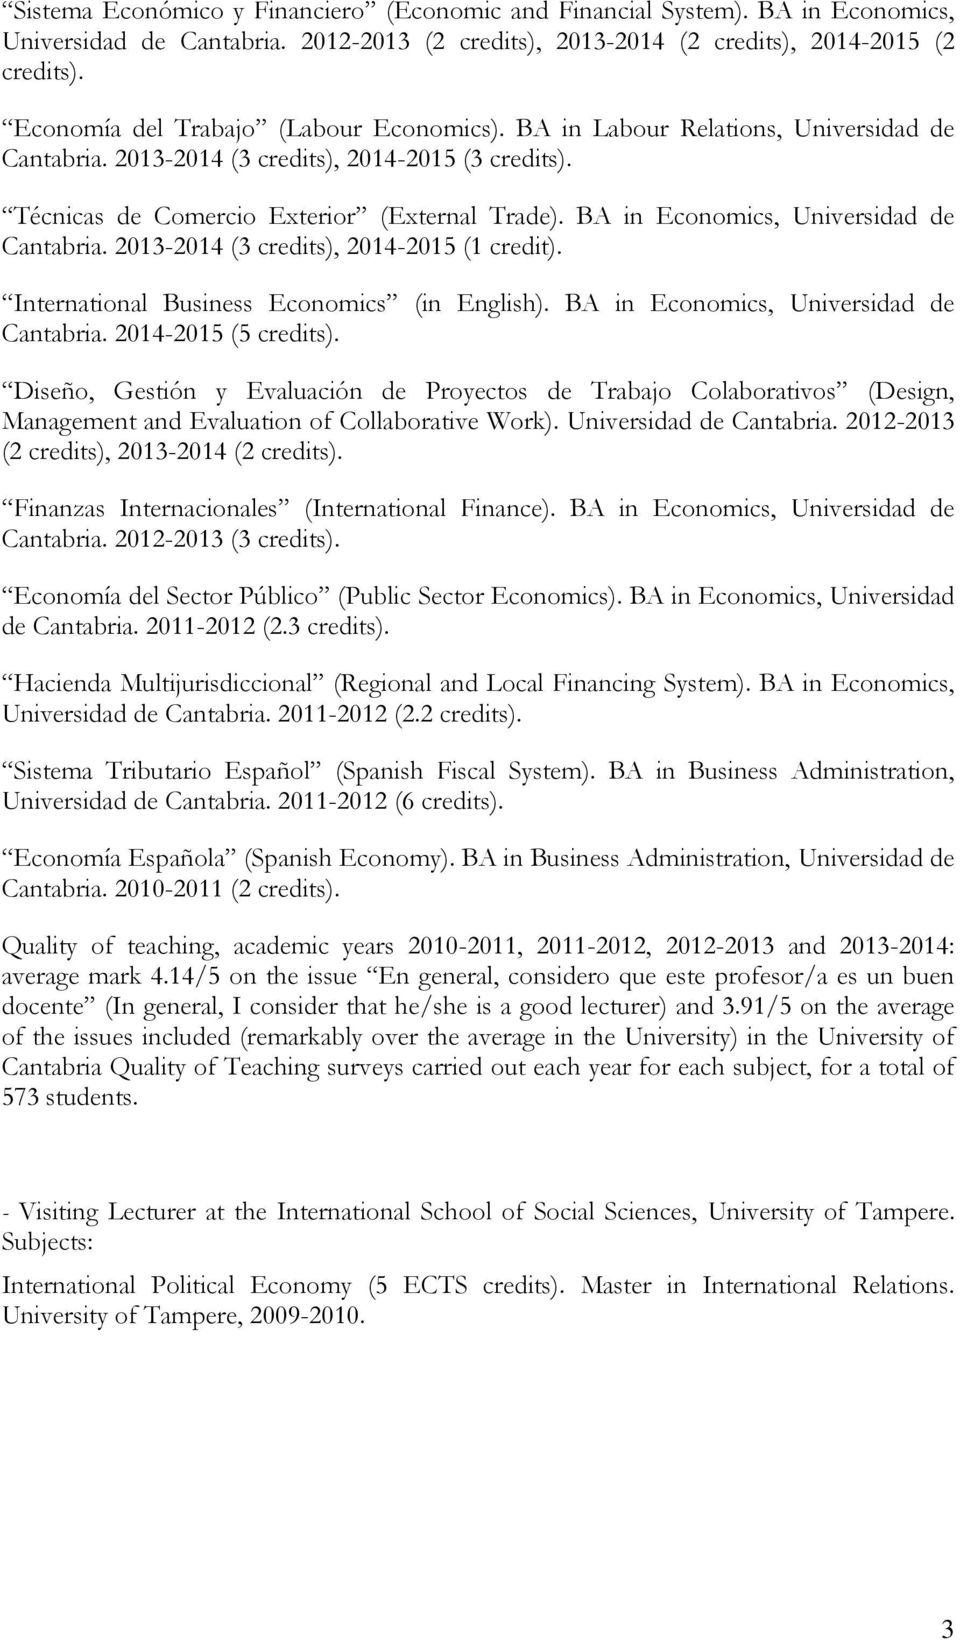 BA in Economics, Universidad de Cantabria. 2013-2014 (3 credits), 2014-2015 (1 credit). International Business Economics (in English). BA in Economics, Universidad de Cantabria. 2014-2015 (5 credits).